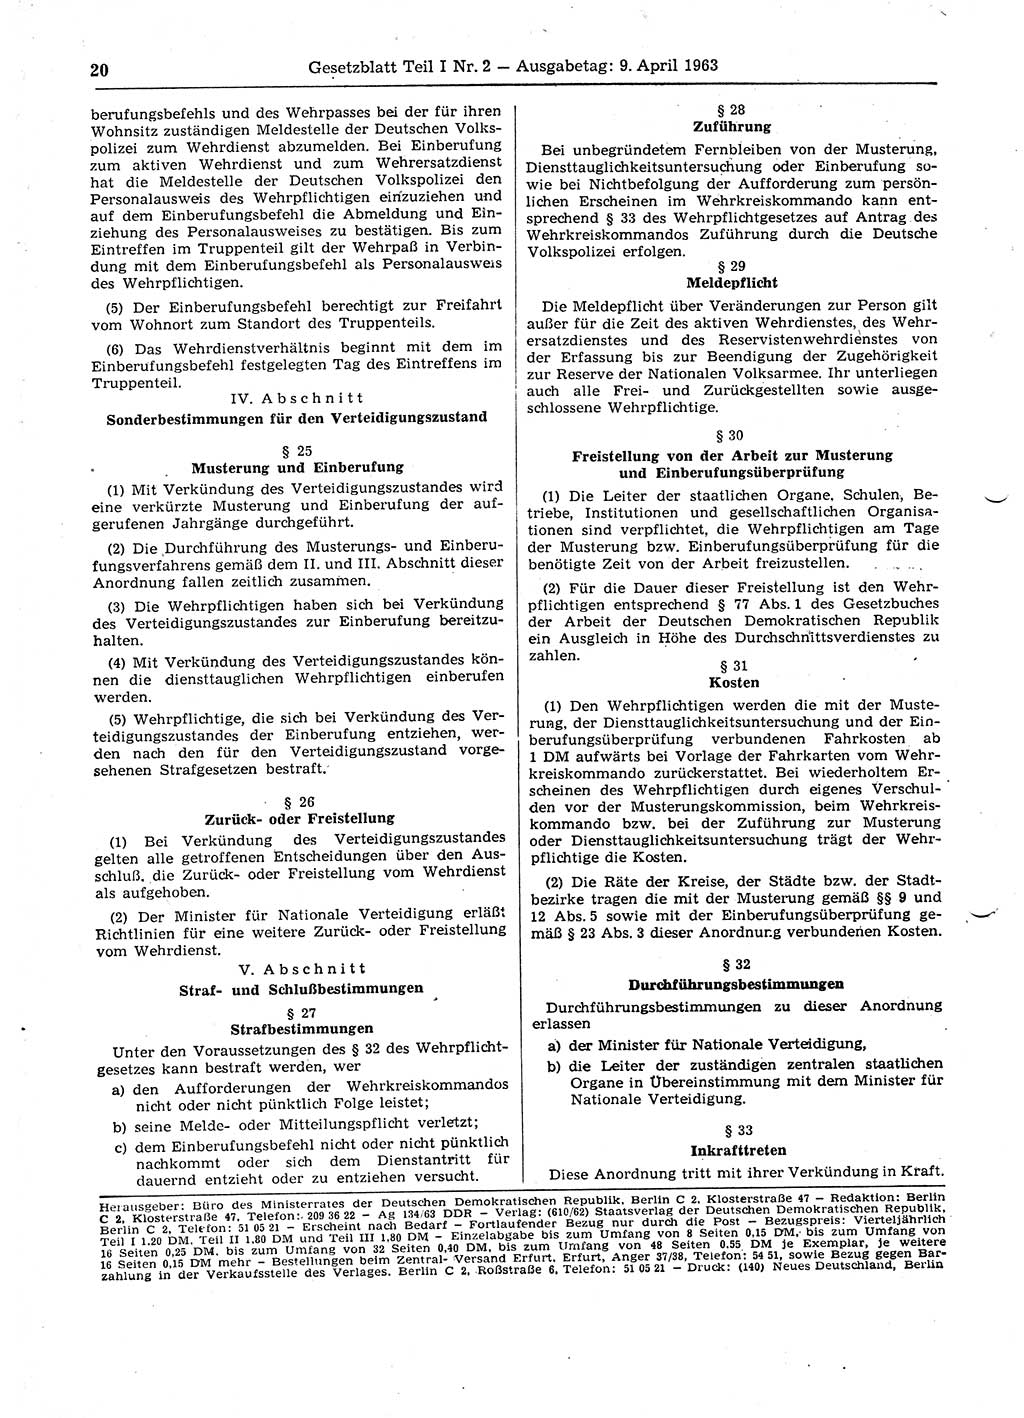 Gesetzblatt (GBl.) der Deutschen Demokratischen Republik (DDR) Teil Ⅰ 1963, Seite 20 (GBl. DDR Ⅰ 1963, S. 20)